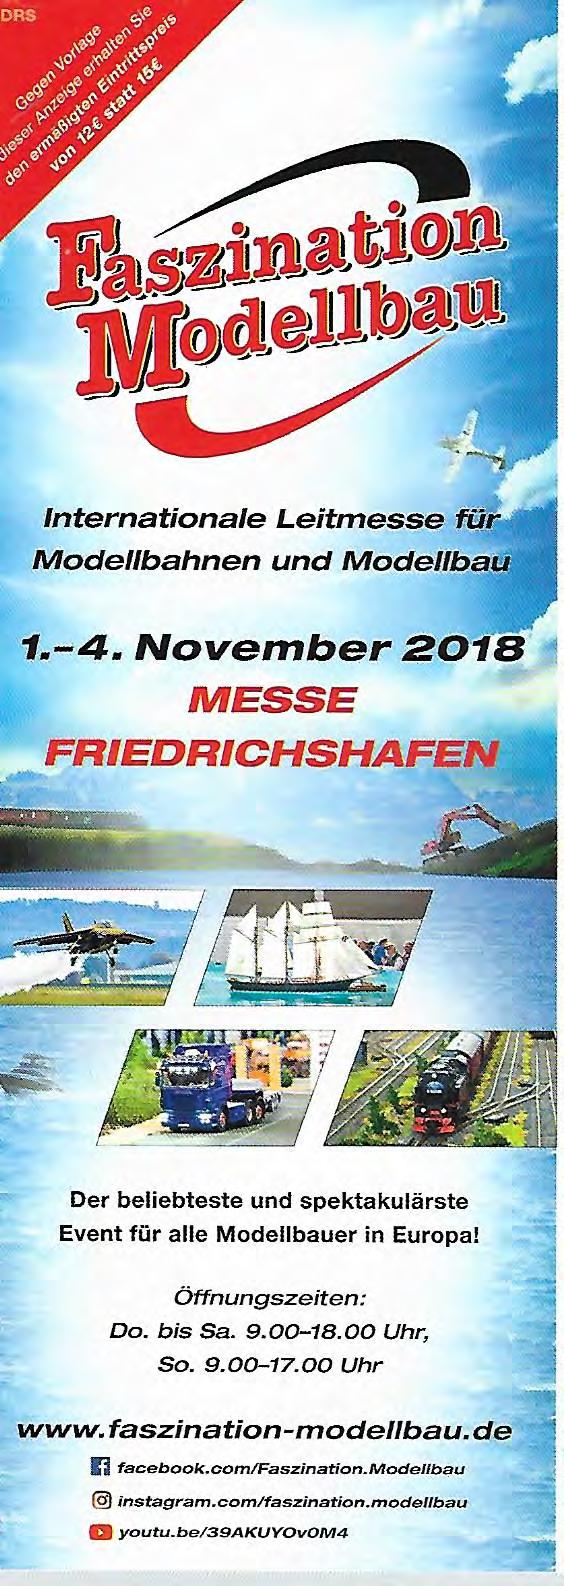 Veranstaltungstipp: Herbst 2018!!! Wir fahren am 03. November 2018 mit dem Bus nach Friedrichshafen zur Faszination Modellbau!